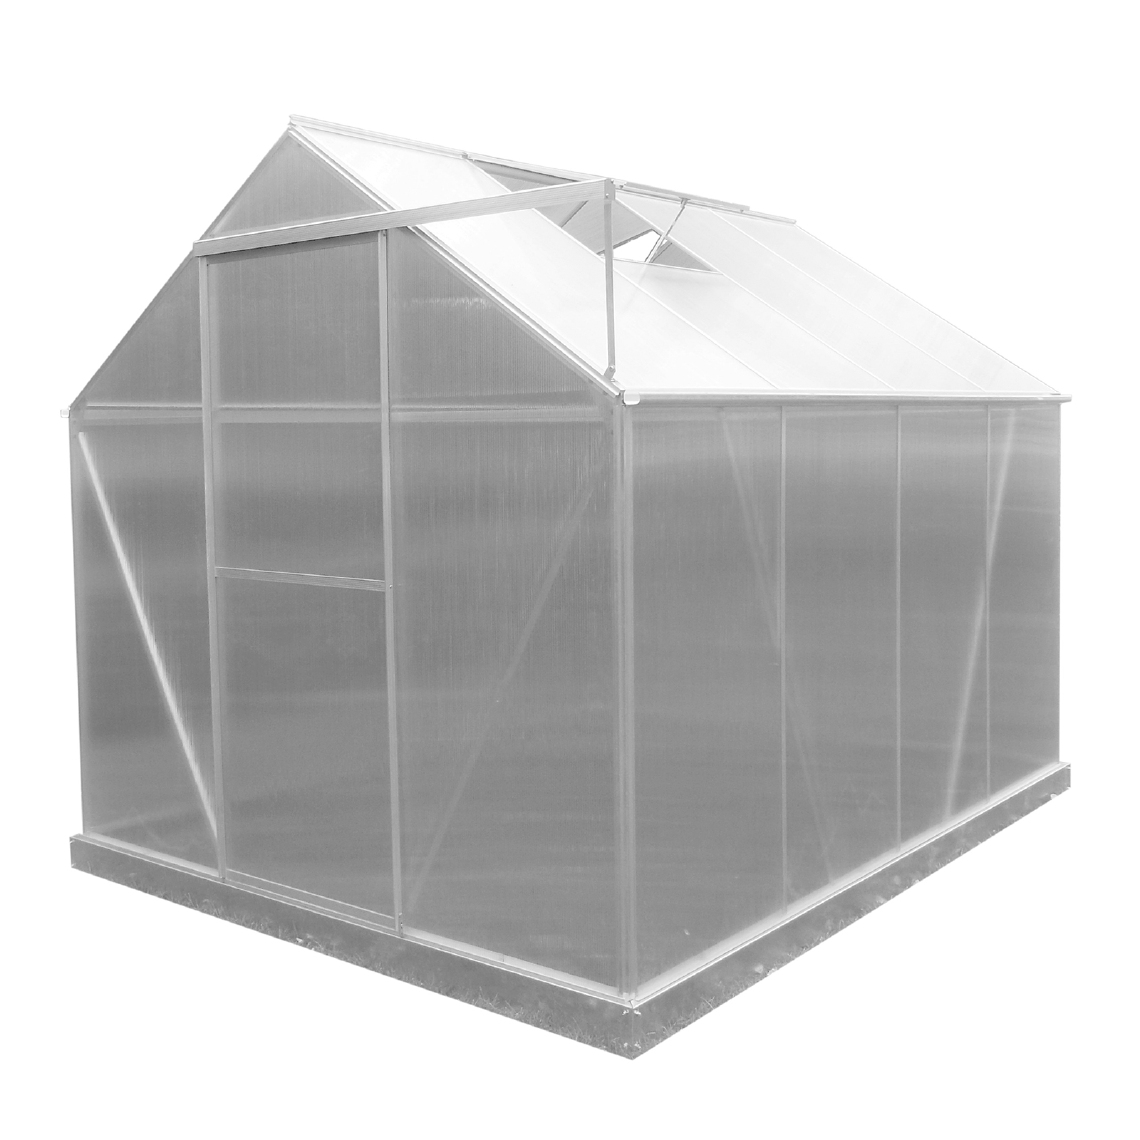 Gardiun - Serre de Jardin en Polycarbonate/Aluminium Gardiun Lunada - 4,82 m² 249x193x190 cm avec Base 4 Modules - Serres en plastique